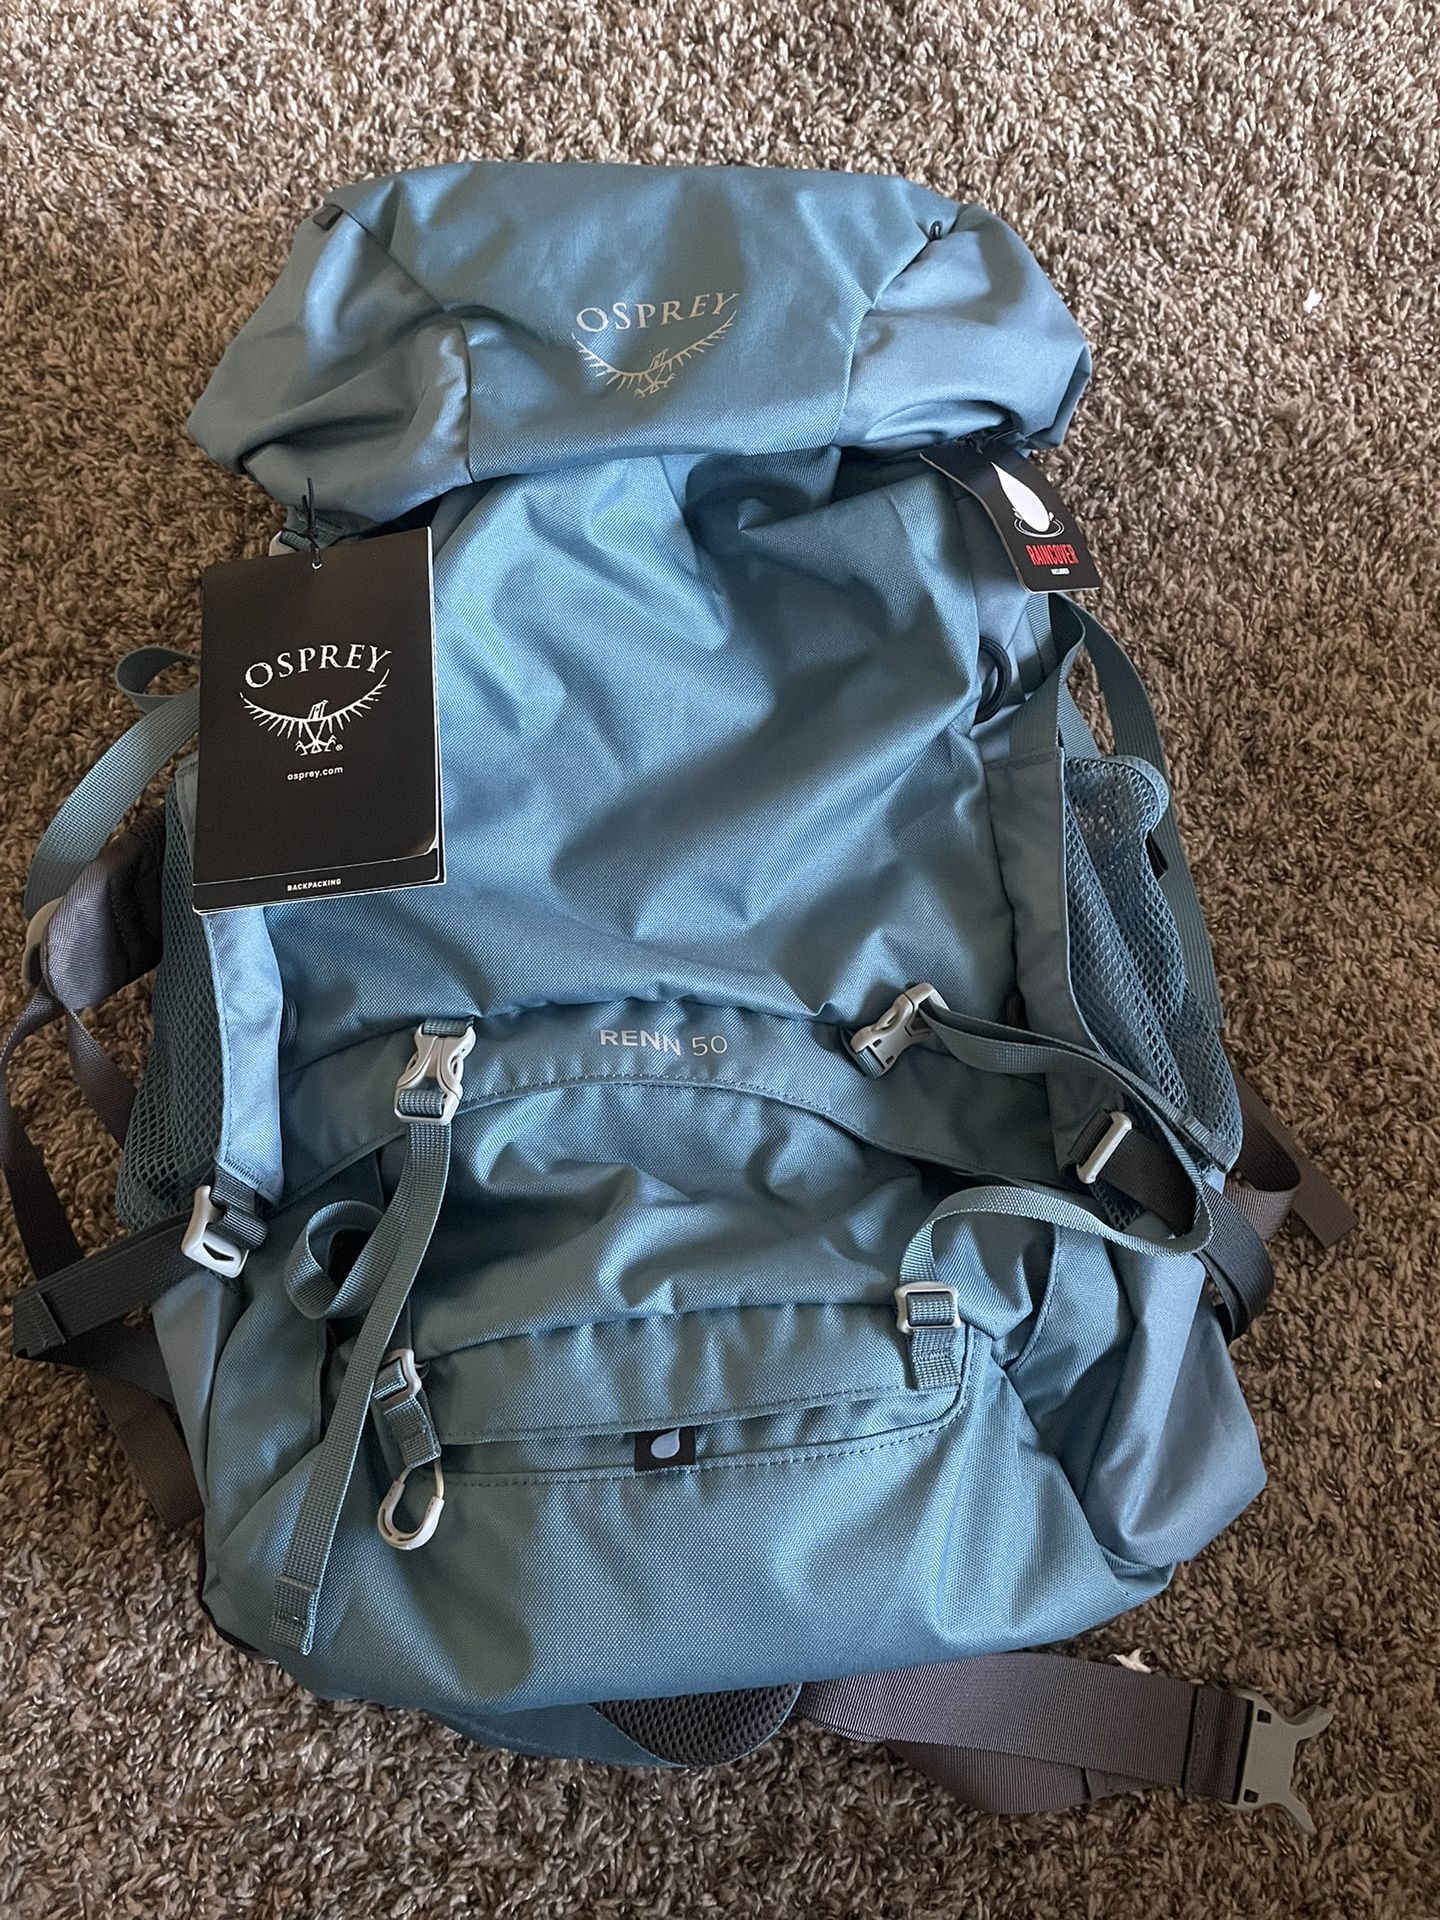 Osprey Renn 50 Women's Backpacking Backpack Challenger Blue